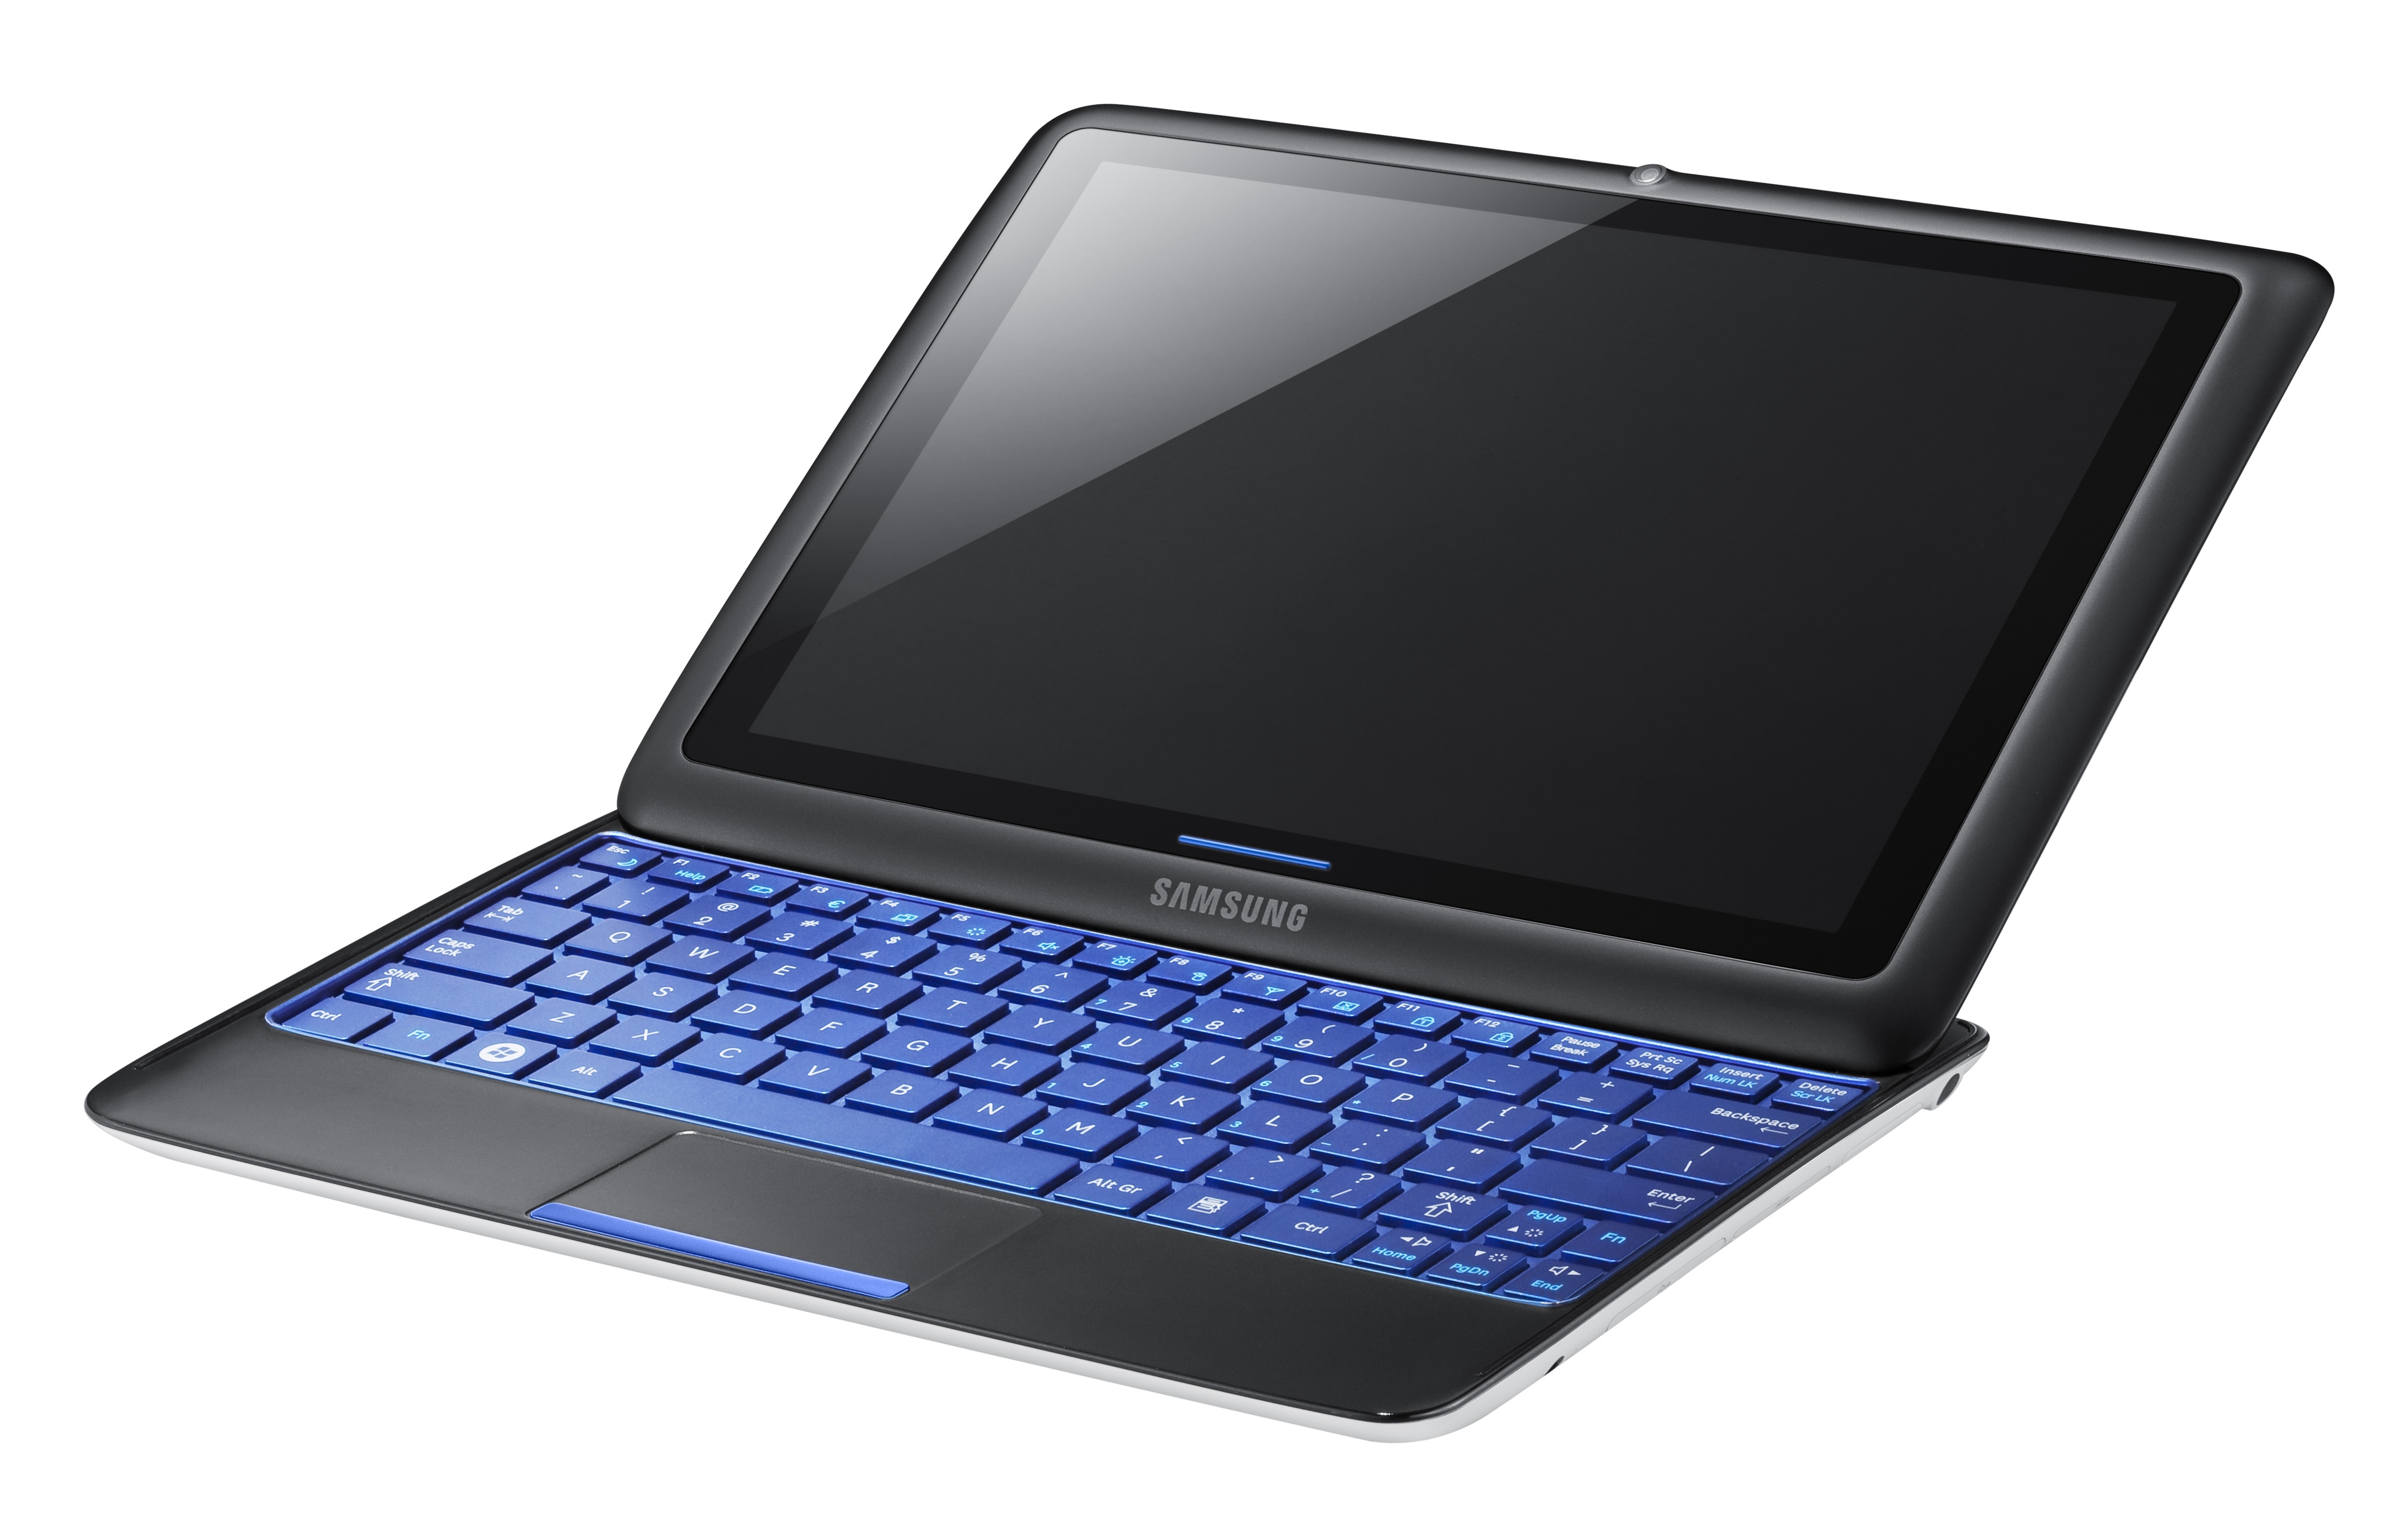 Le Samsung Sliding PC 7, une tablette-ordinateur plutôt originale. © Samsung